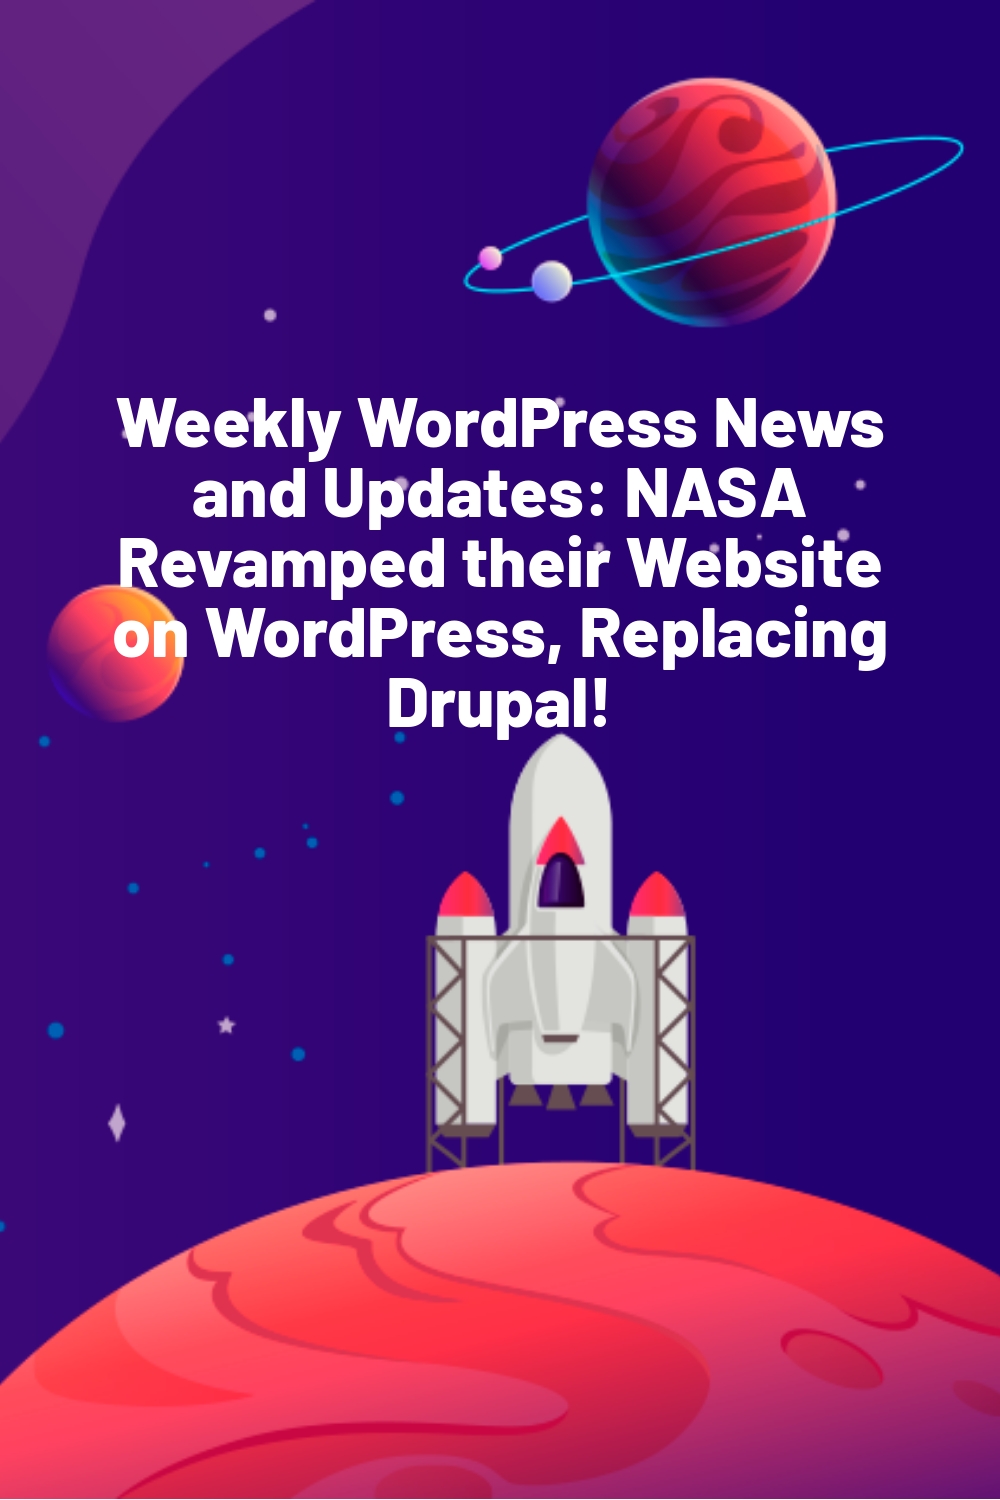 Weekly WordPress News and Updates: NASA Revamped their Website on WordPress, Replacing Drupal!